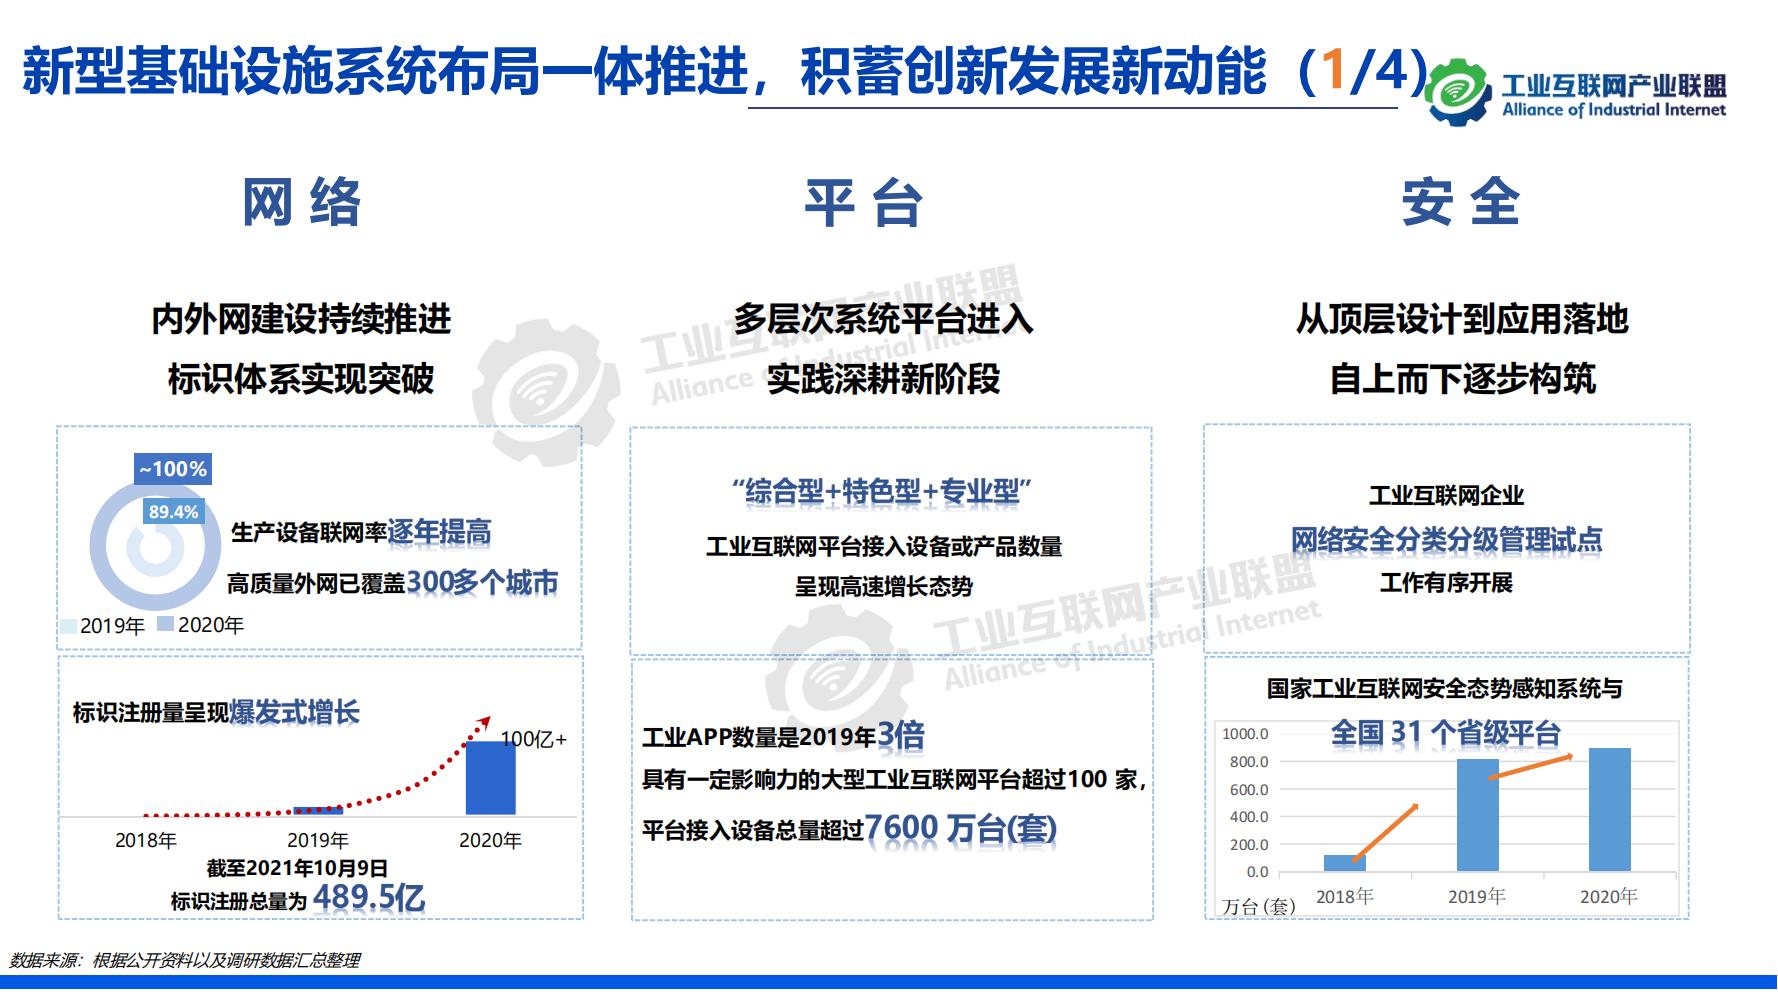 1-中国工业互联网发展成效评估报告-水印_13.jpg